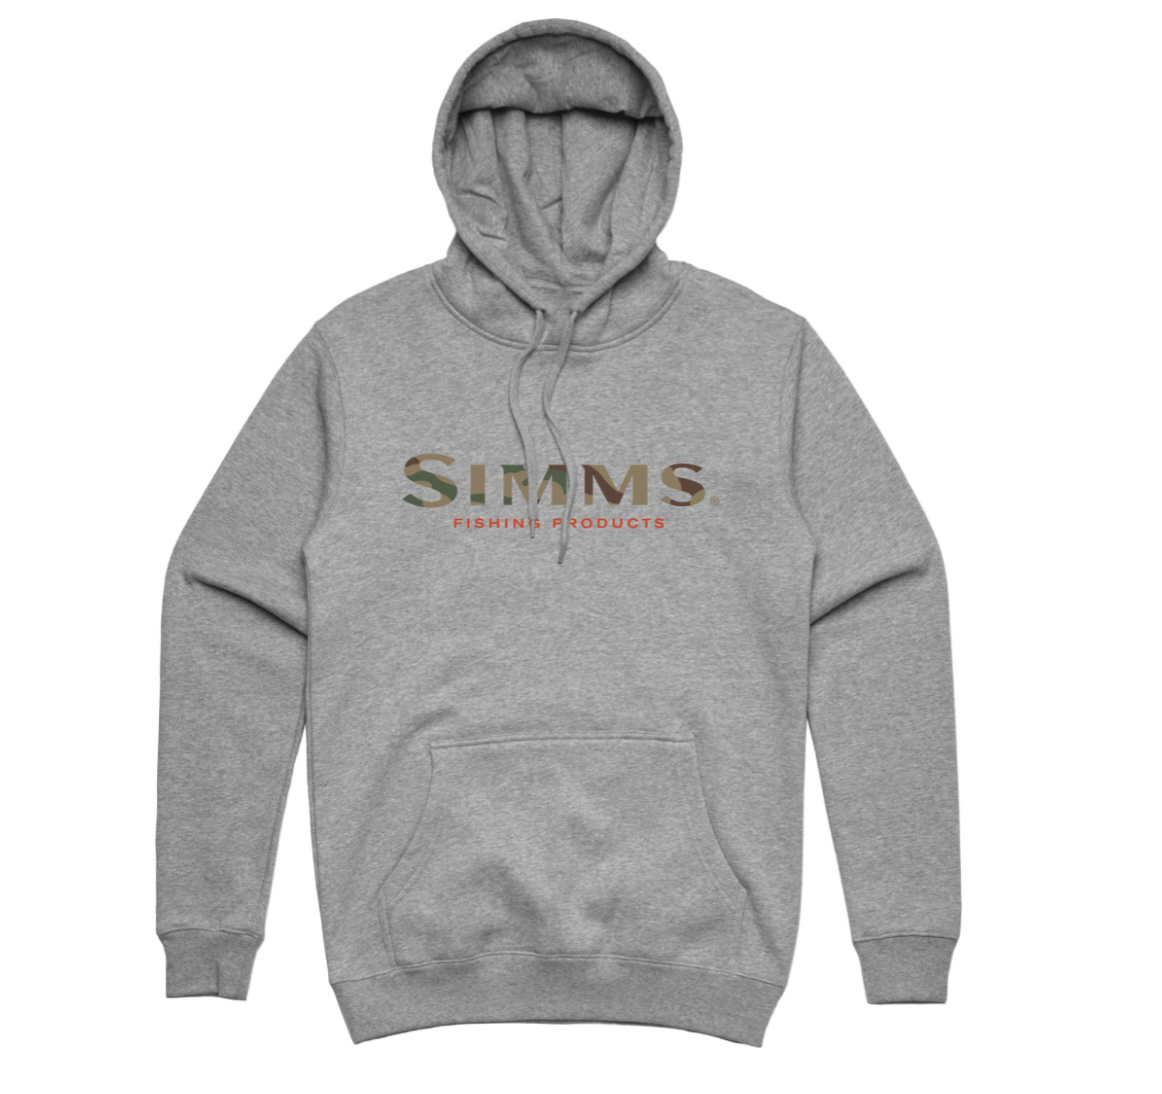 Simms Logo Hoodie - LOTWSHQ